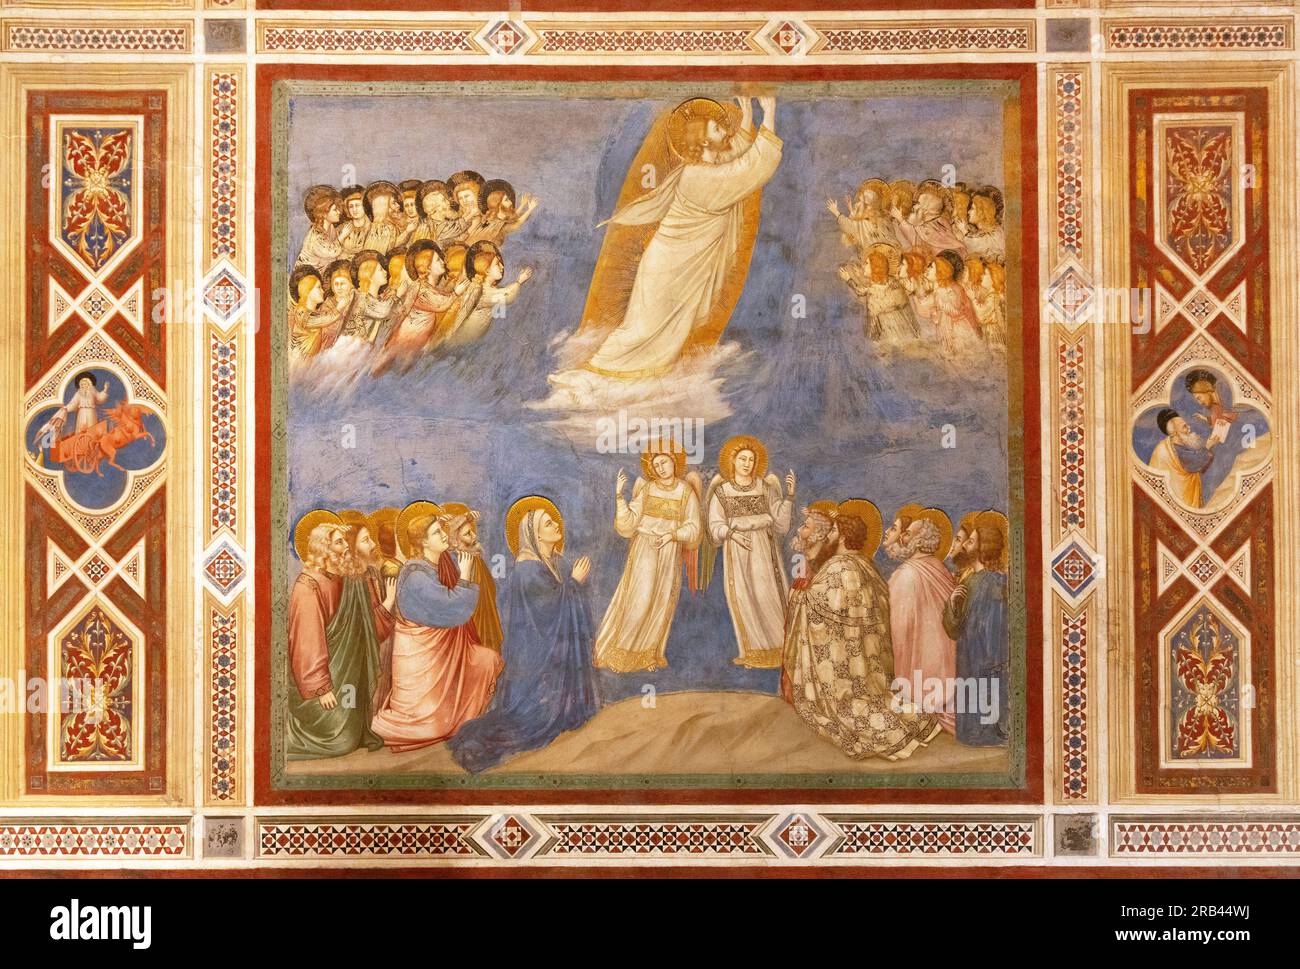 Fresques de Giottos, la chapelle Scrovegni, Padoue - peintures de la Renaissance italienne du 14e siècle de la vie du Christ ; vu ici 'Ascension' ; Padoue Italie Banque D'Images